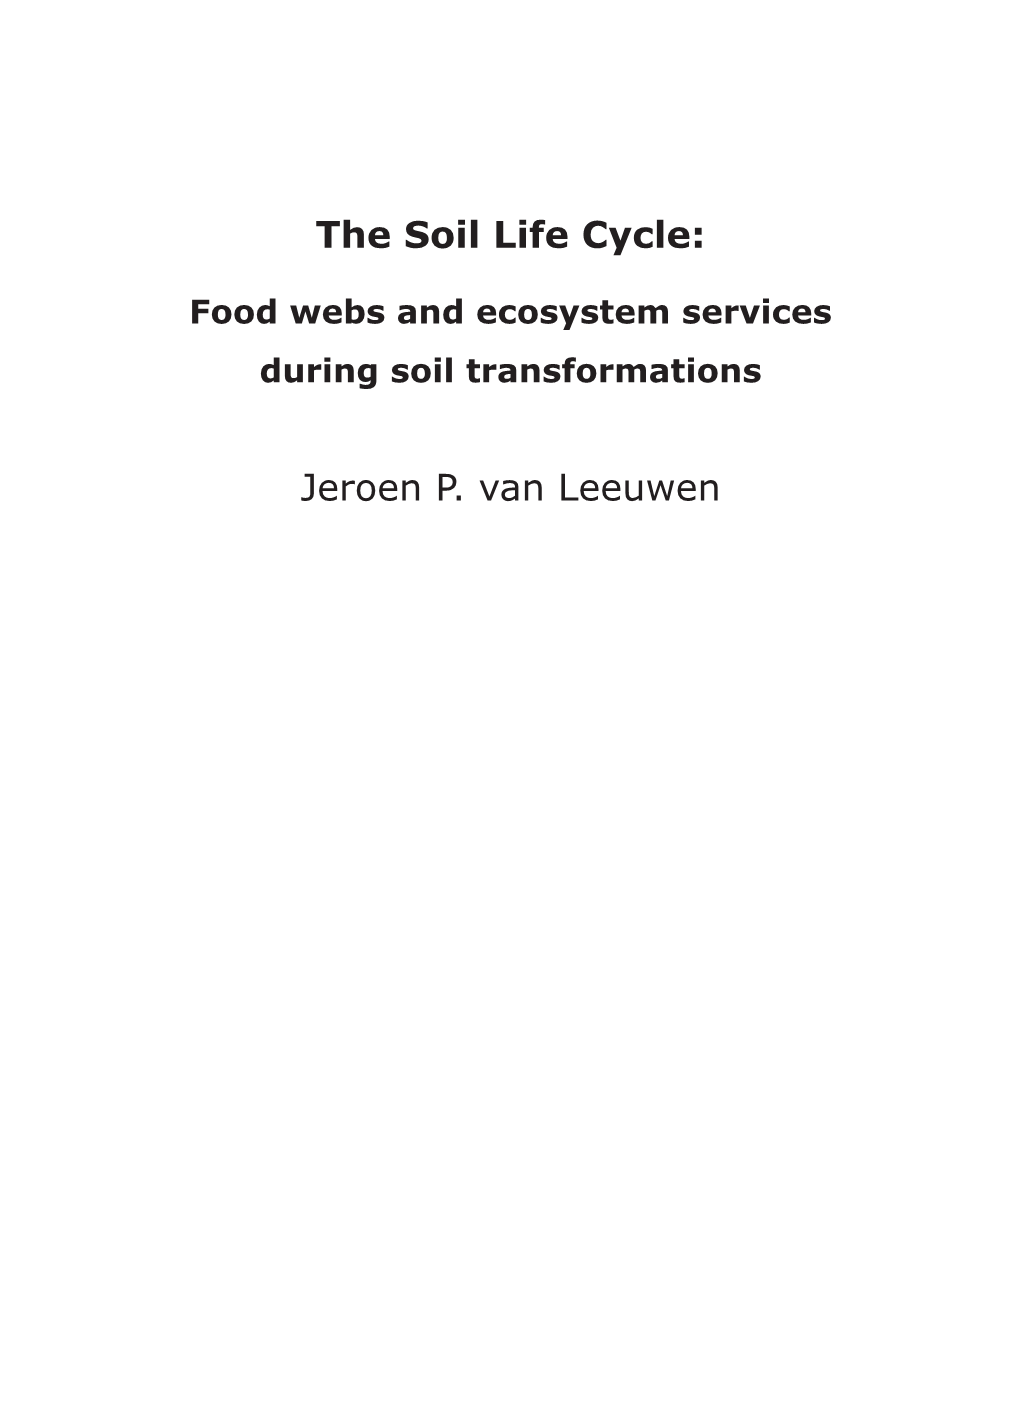 The Soil Life Cycle: Jeroen P. Van Leeuwen